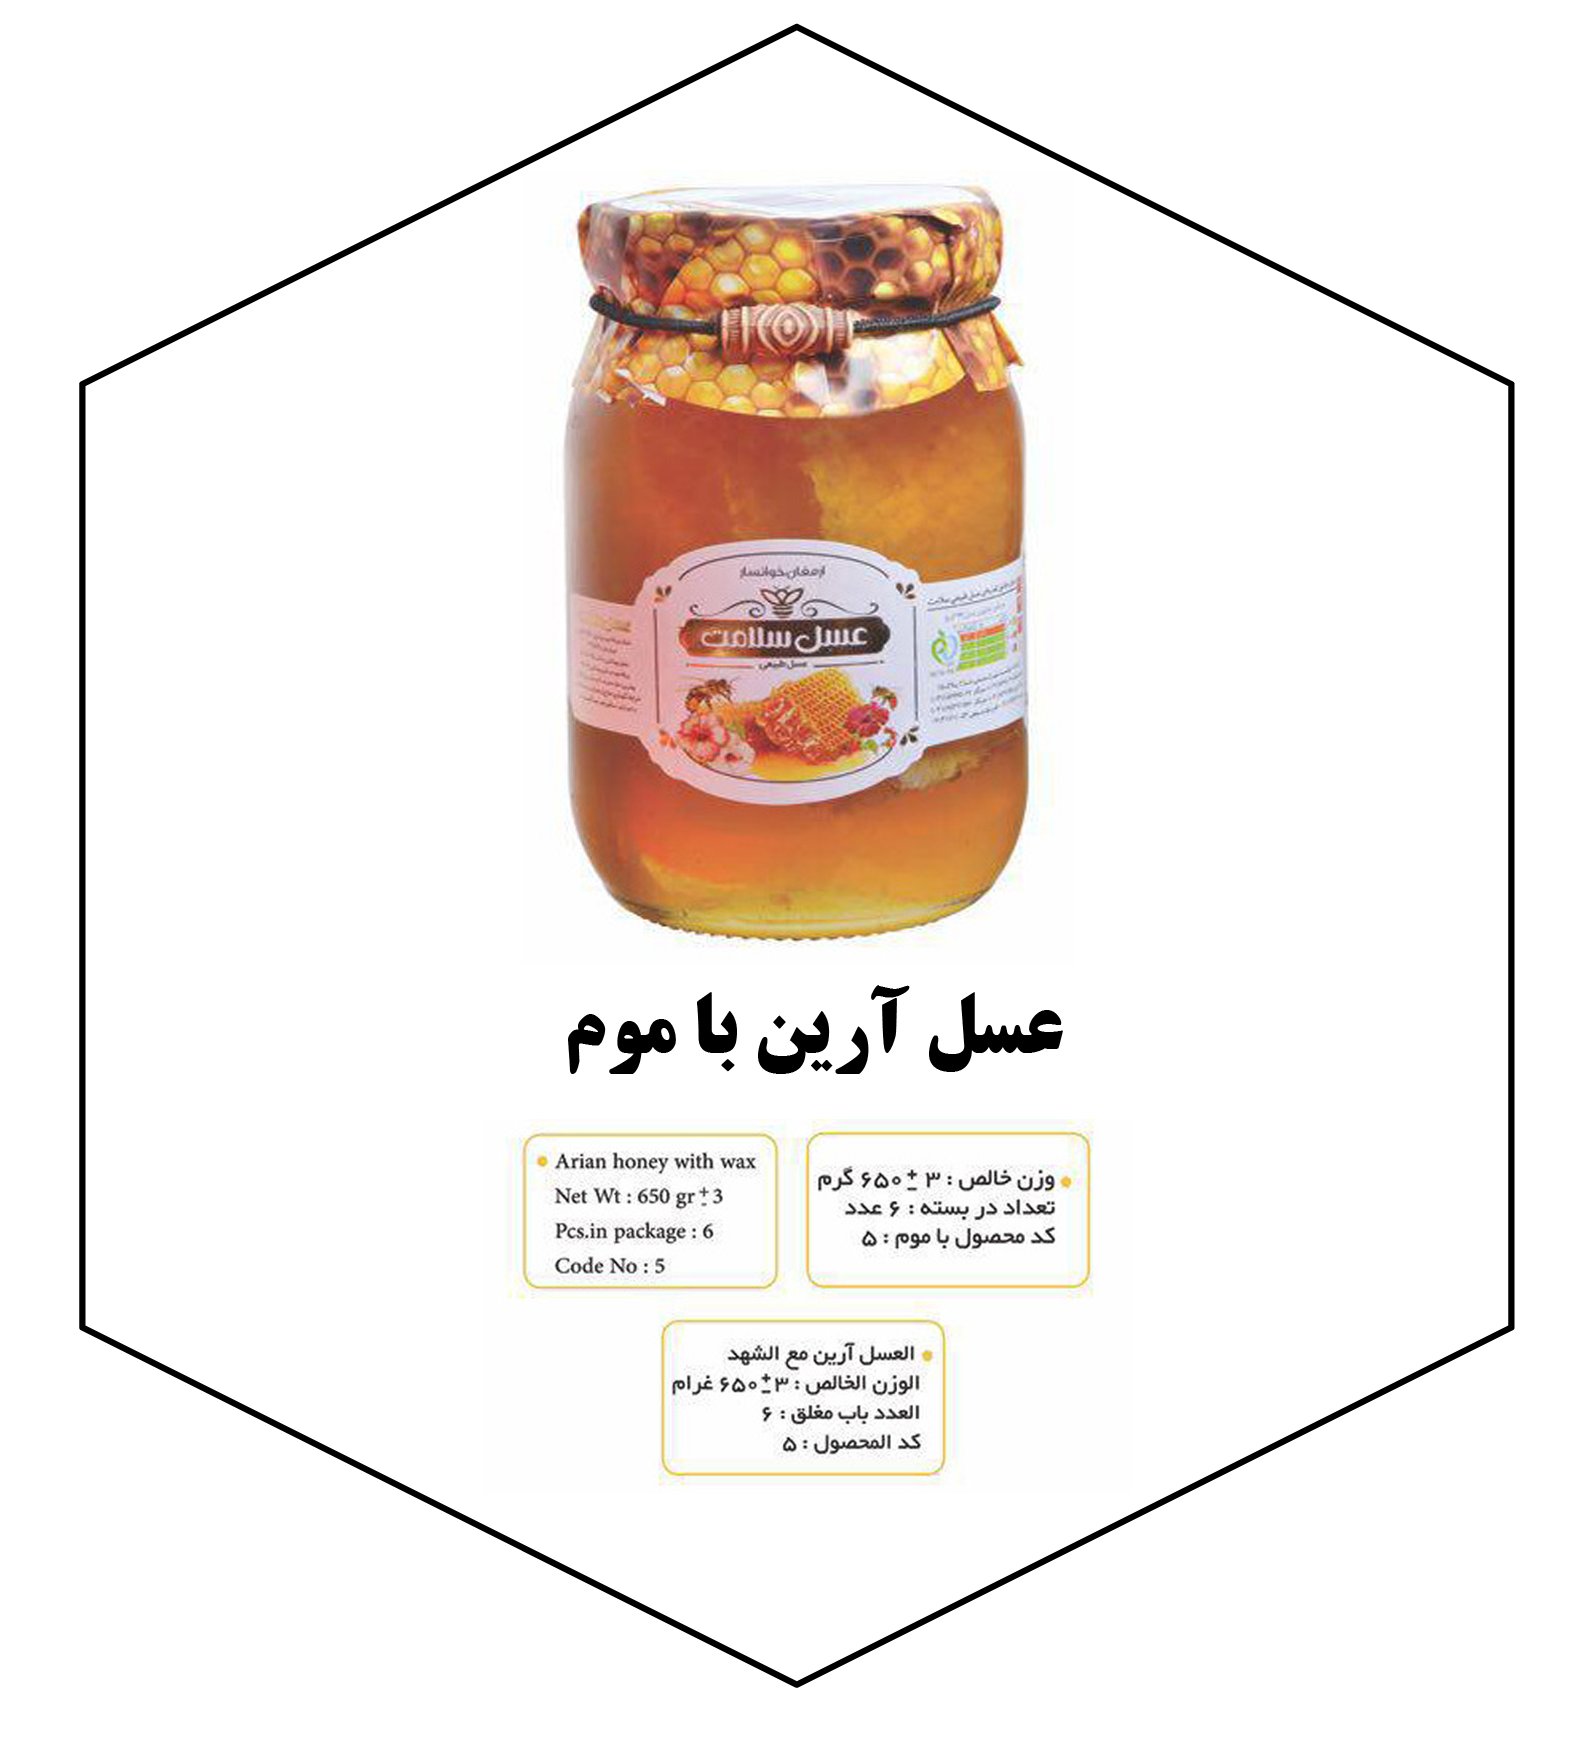 Arian honey